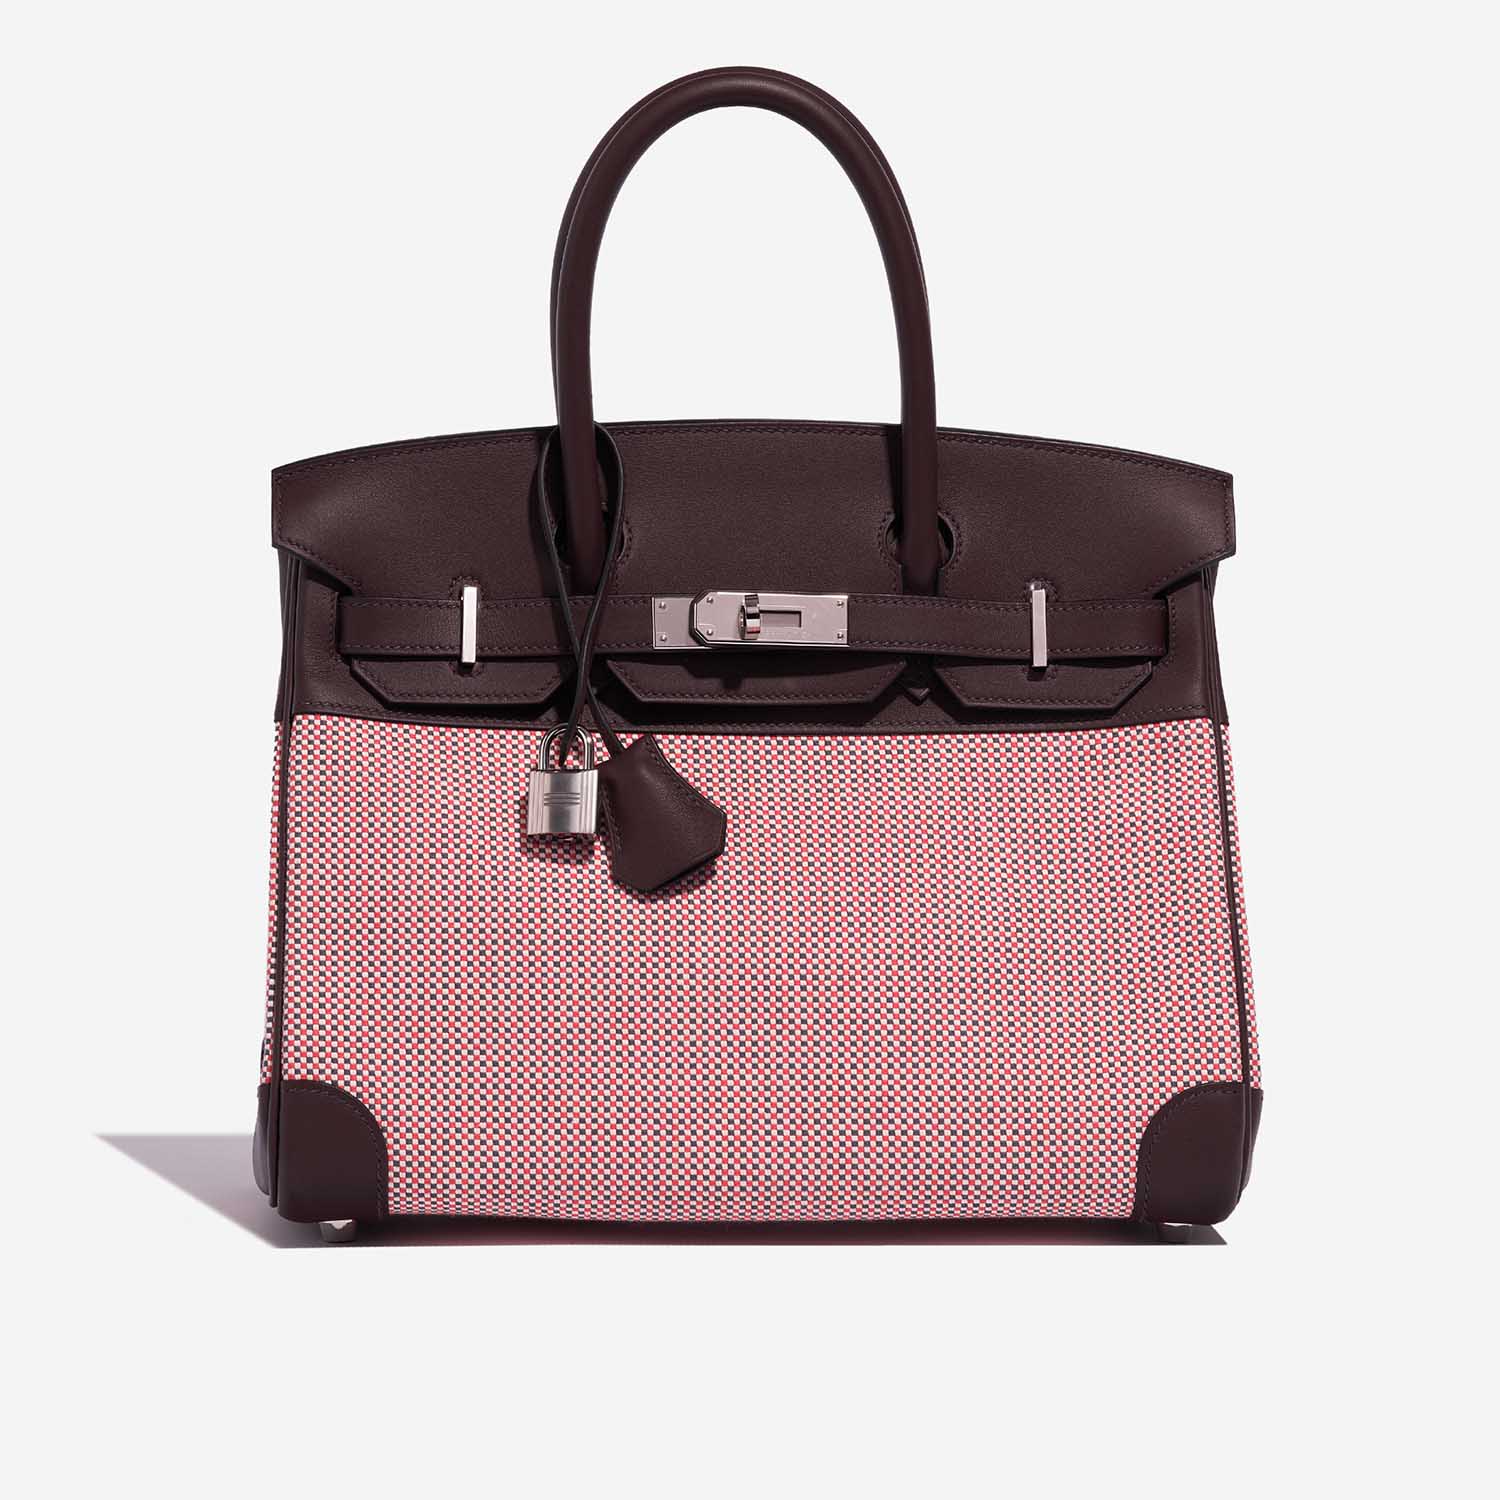 Hermès Birkin 30 Ecru-RougeSellier-Anemone-Brique Front | Verkaufen Sie Ihre Designer-Tasche auf Saclab.com